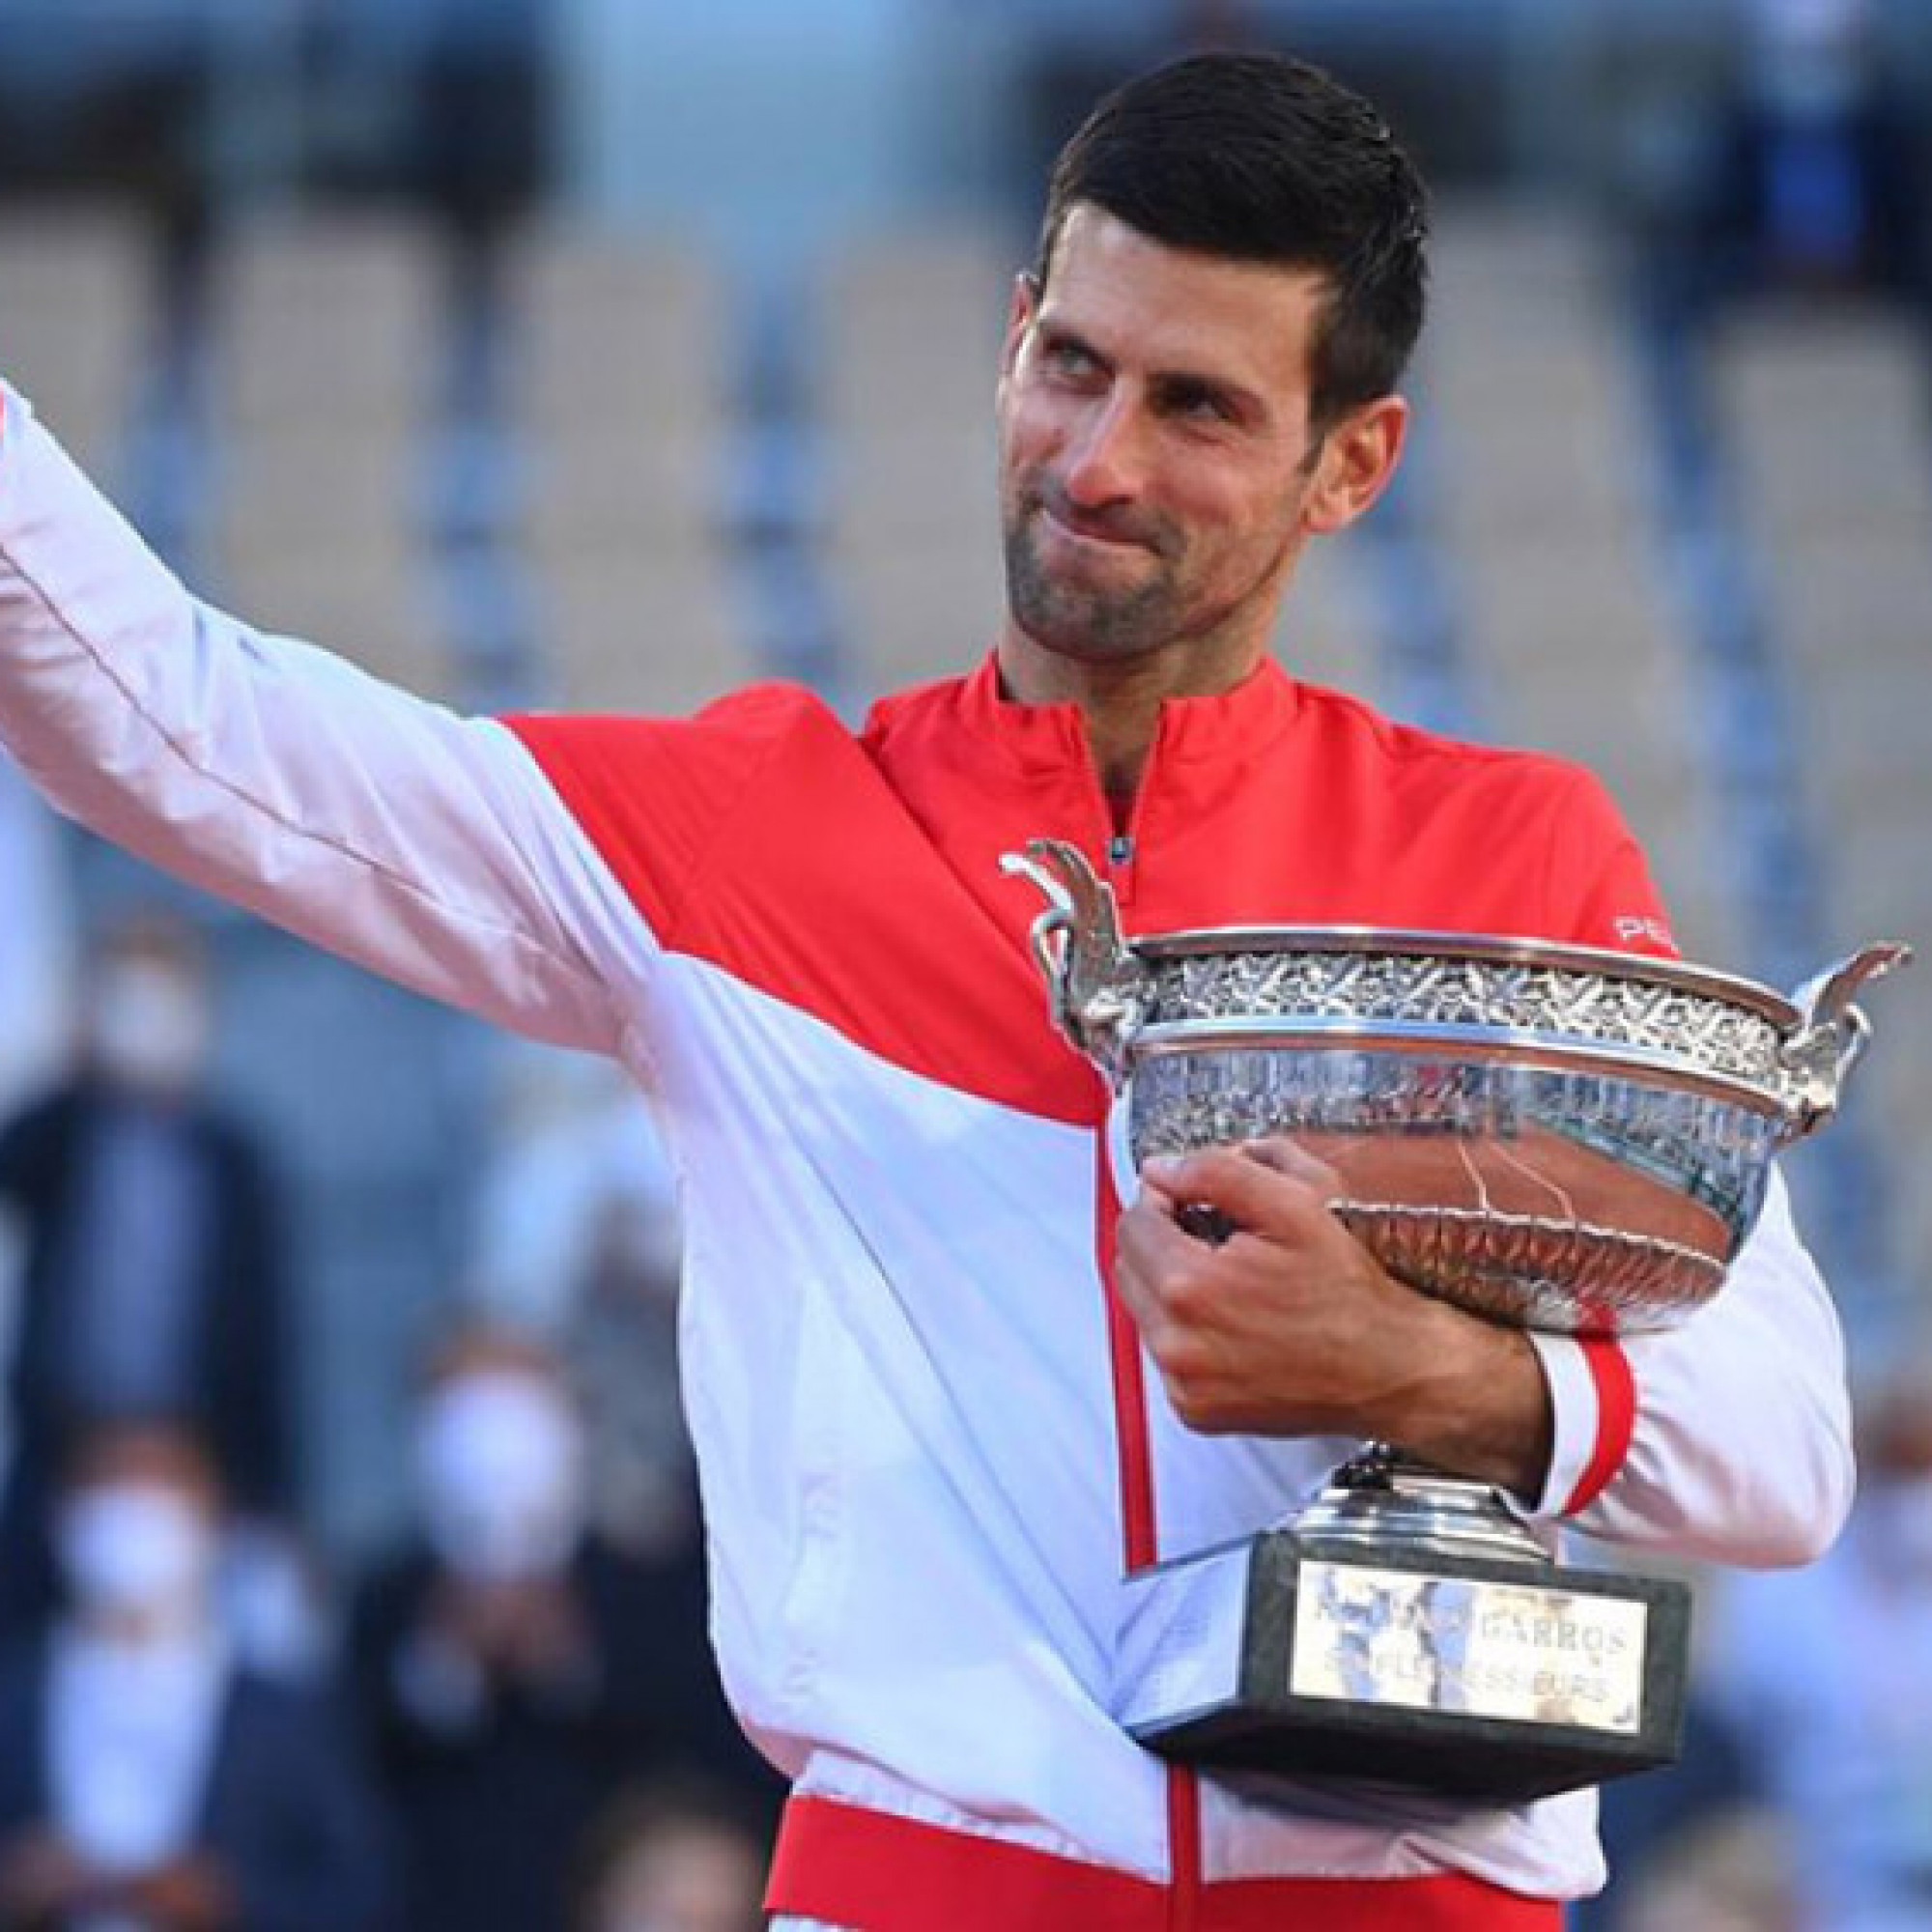  - Nóng nhất thể thao sáng 17/5: Huyền thoại dự đoán Djokovic giành 25 Grand Slam